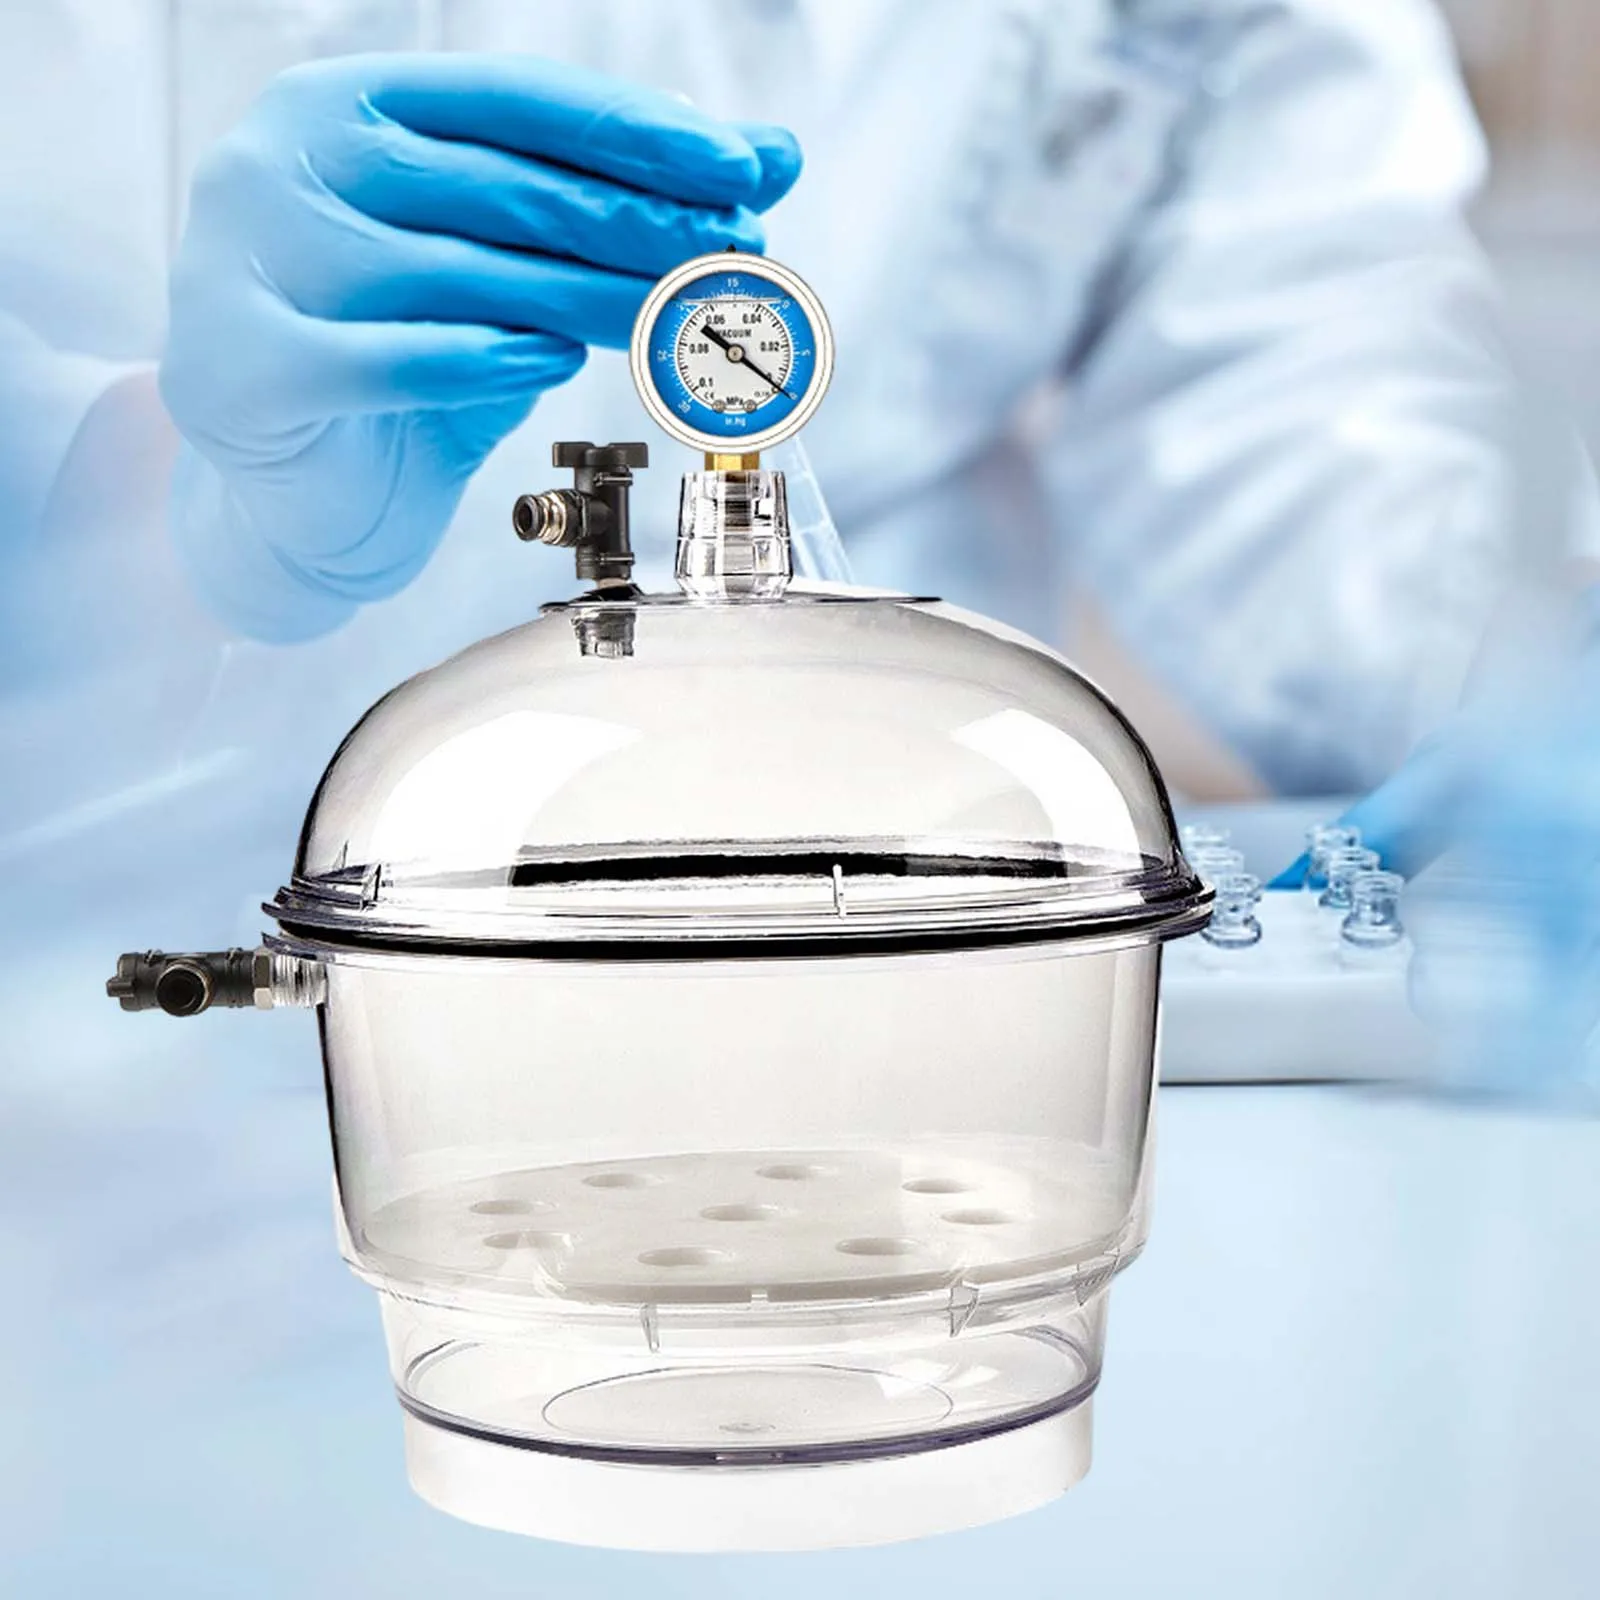 Dessecador a vácuo com manômetro Secador transparente Secador de jarra Vaso de secagem de vidro Dessecador pequeno de laboratório